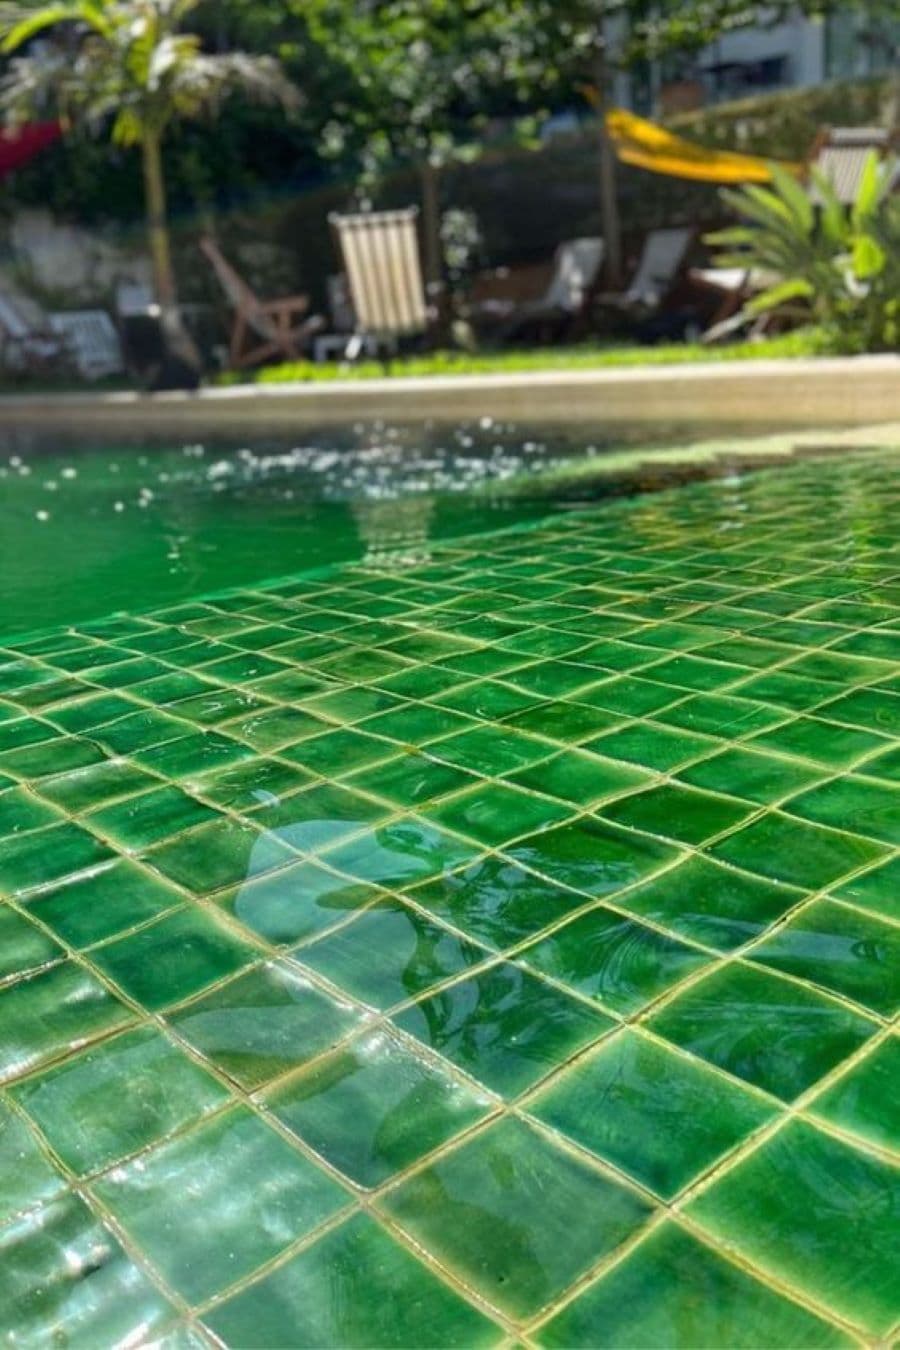 Detalle de piscina con azulejos cuadrados de color verde. El agua de la piscina se ve verde.